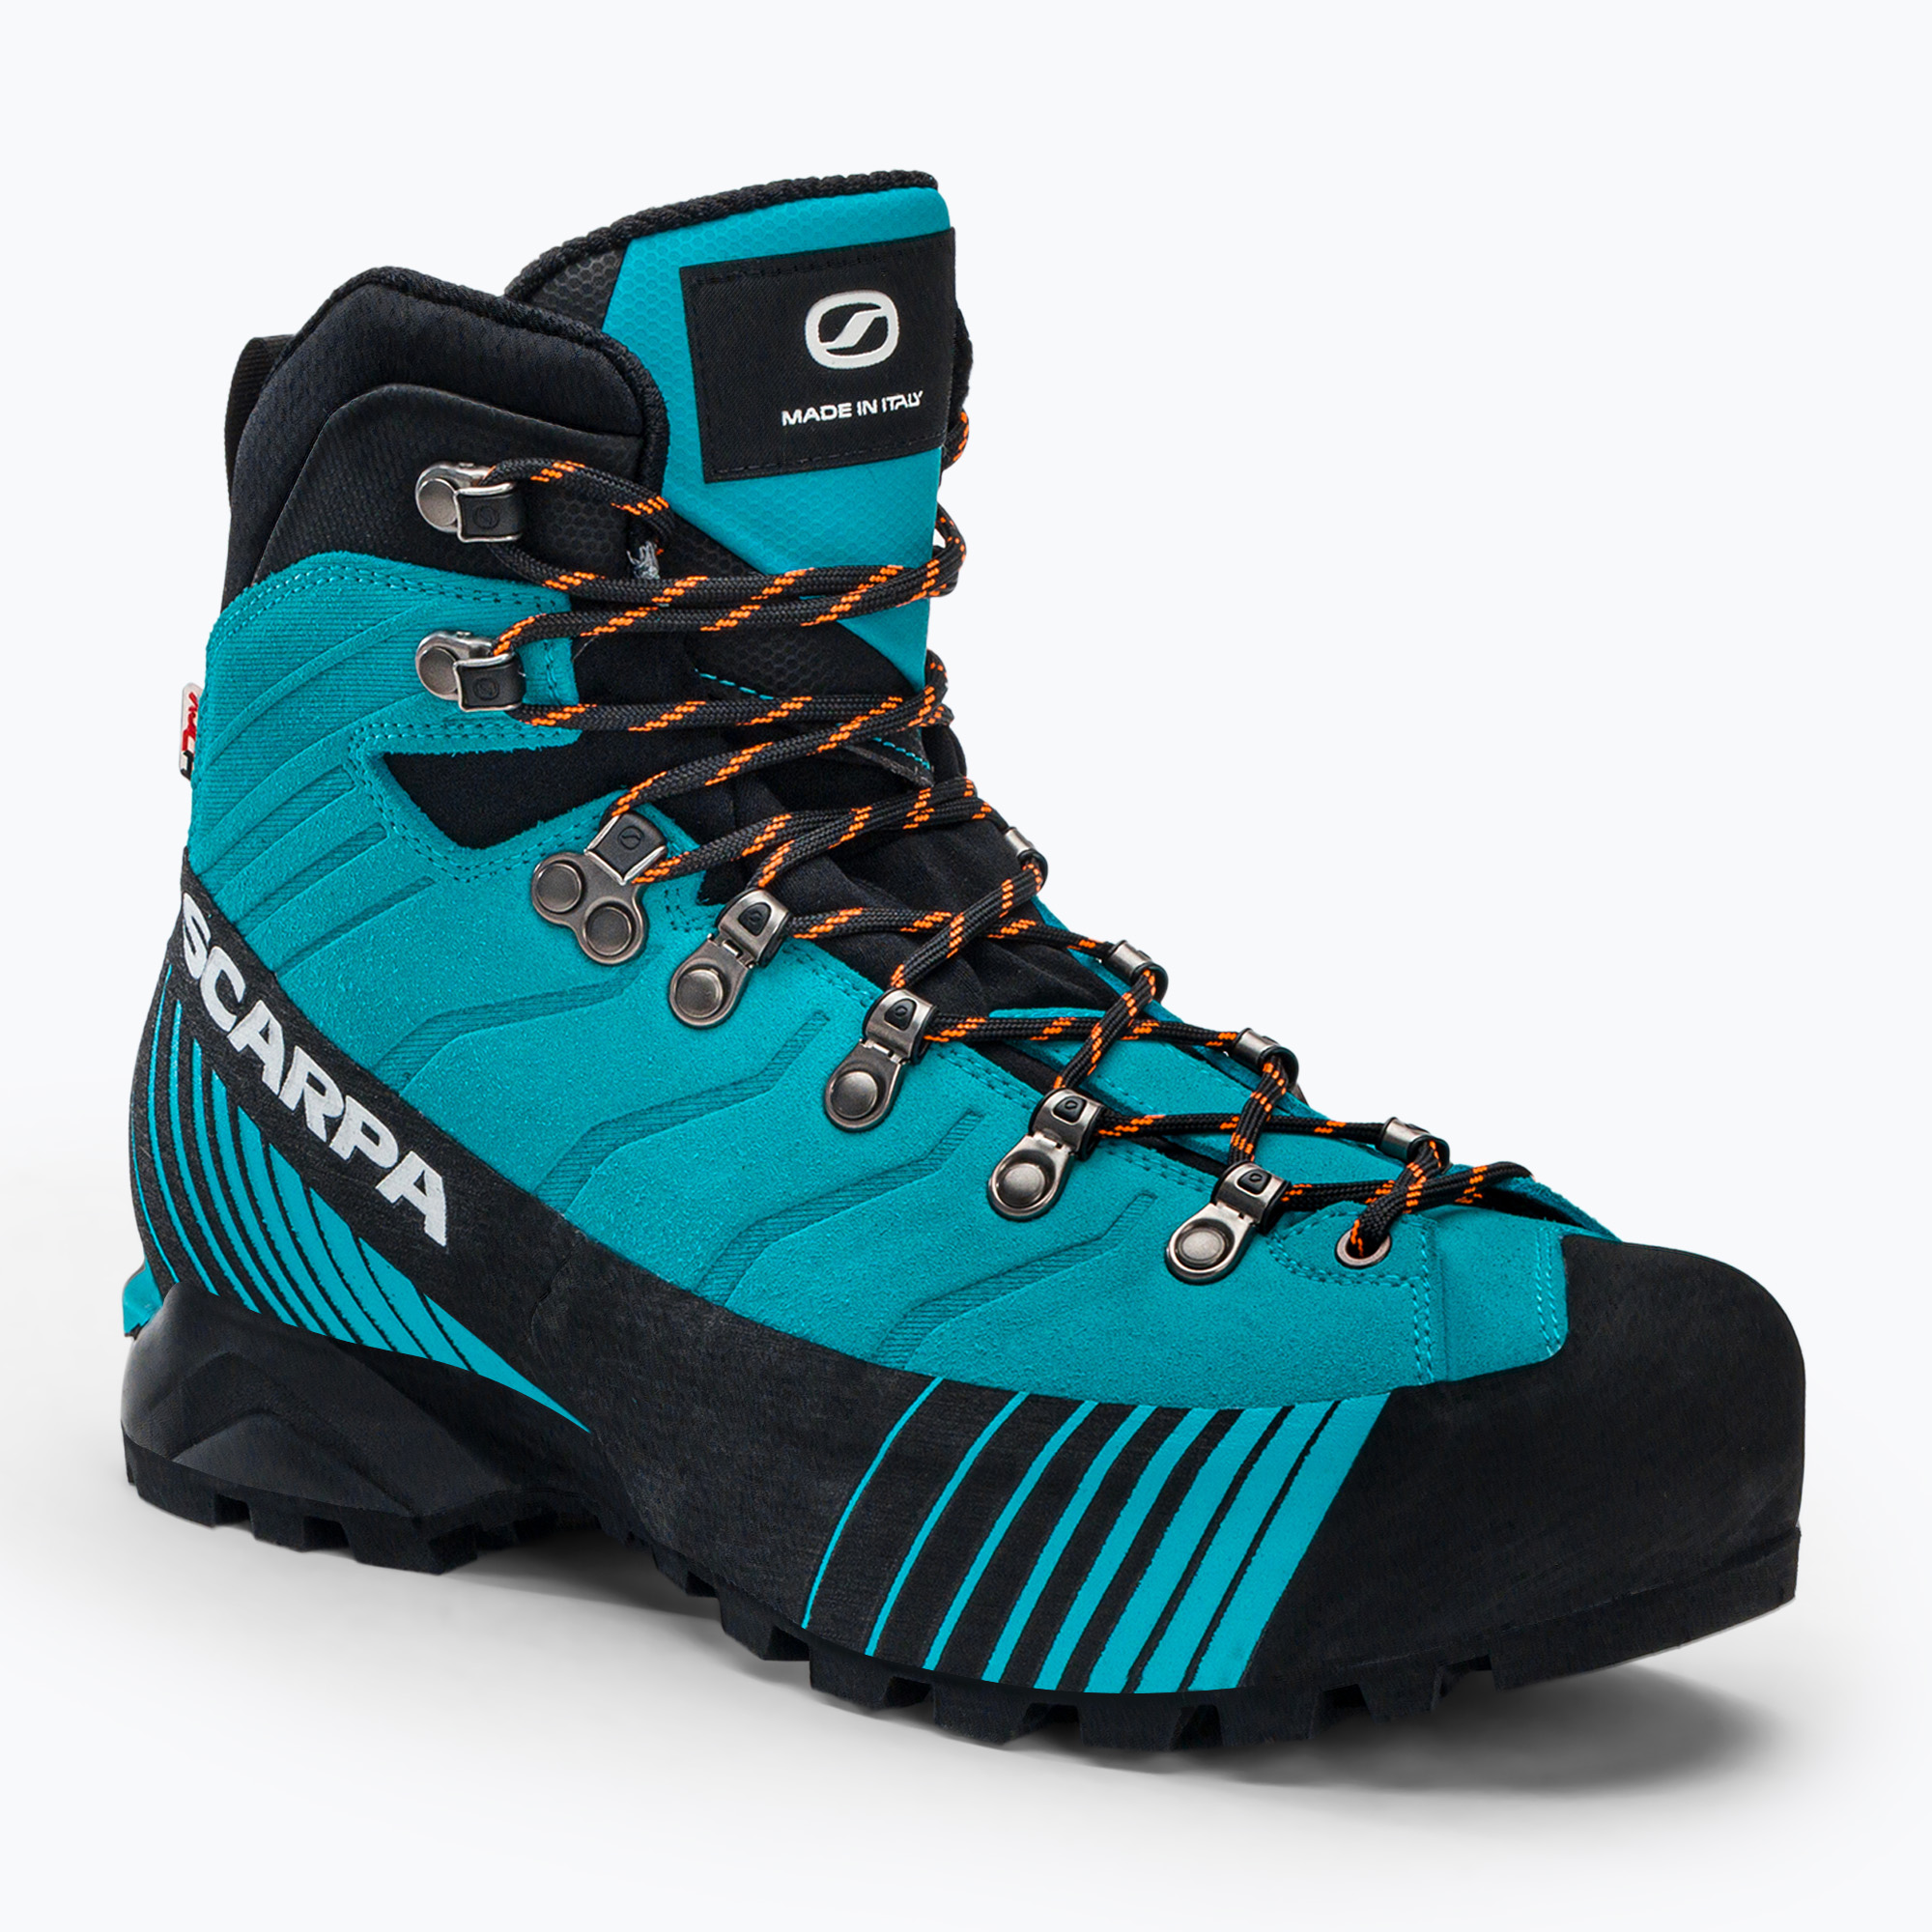 Cizme alpine înalte pentru bărbați SCARPA Ribelle HD albastru 71088-250/4